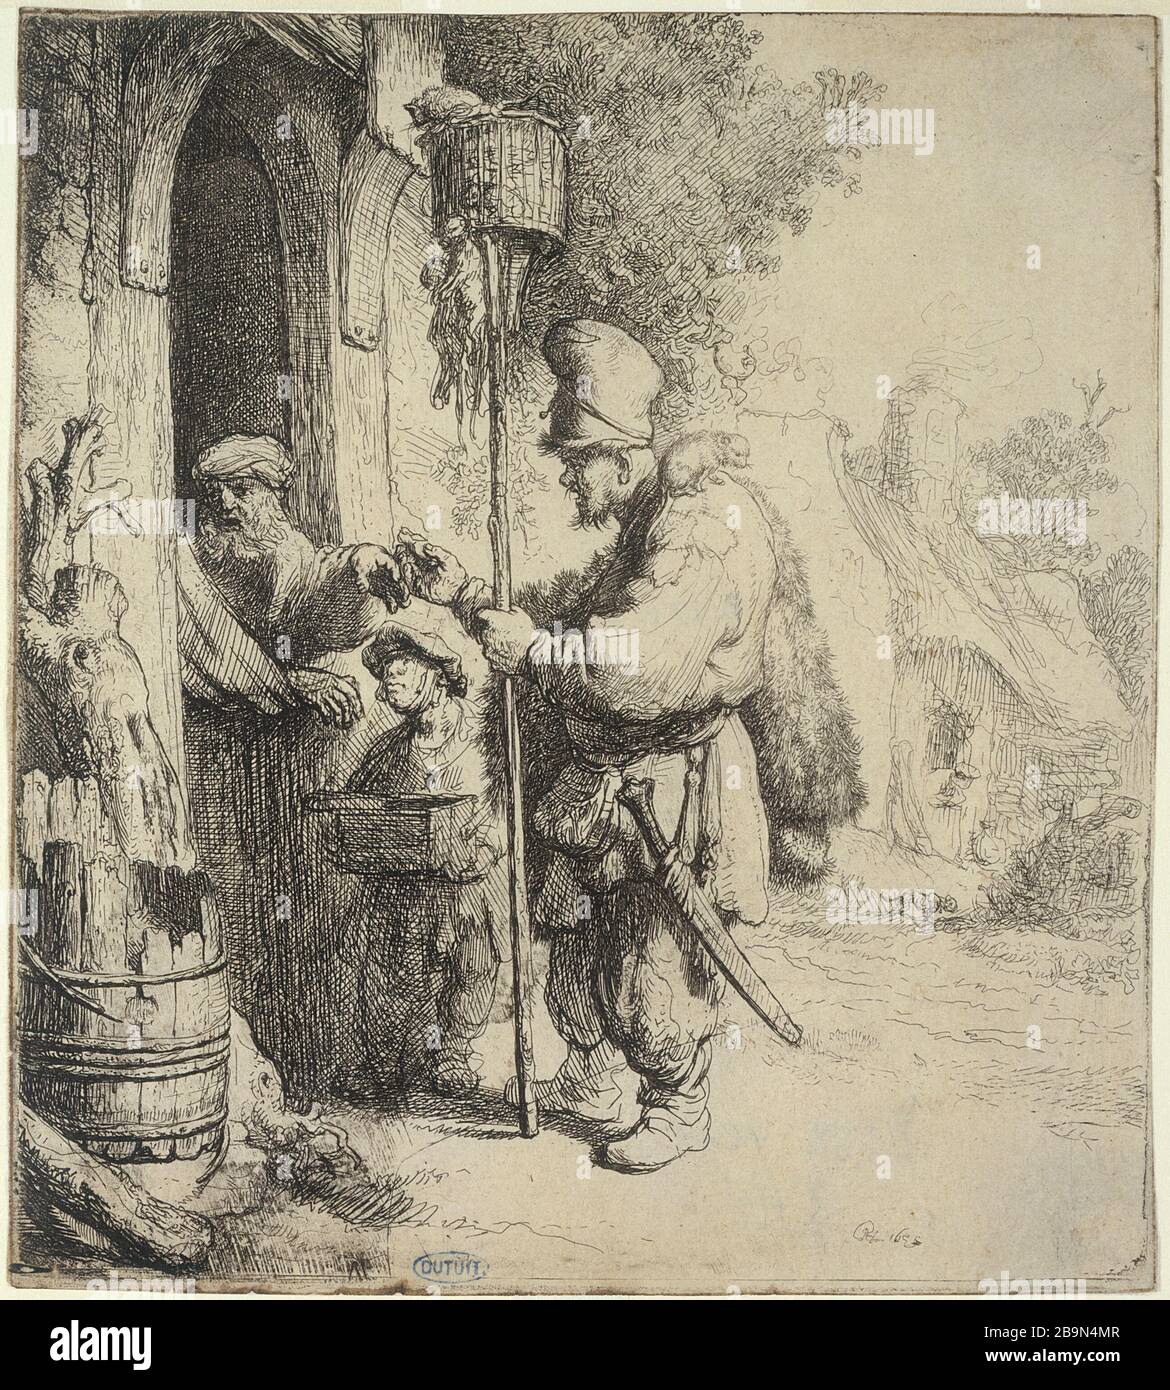 VERKÄUFER VON DEAD-Rat Harmensz van Rijn Rembrandt (1606-1669). "Le vendeur de mort-aux-Rats" (B 131 - 3ème état), 1632. Musée des Beaux-Arts de la Ville de Paris, Petit Palais. Stockfoto